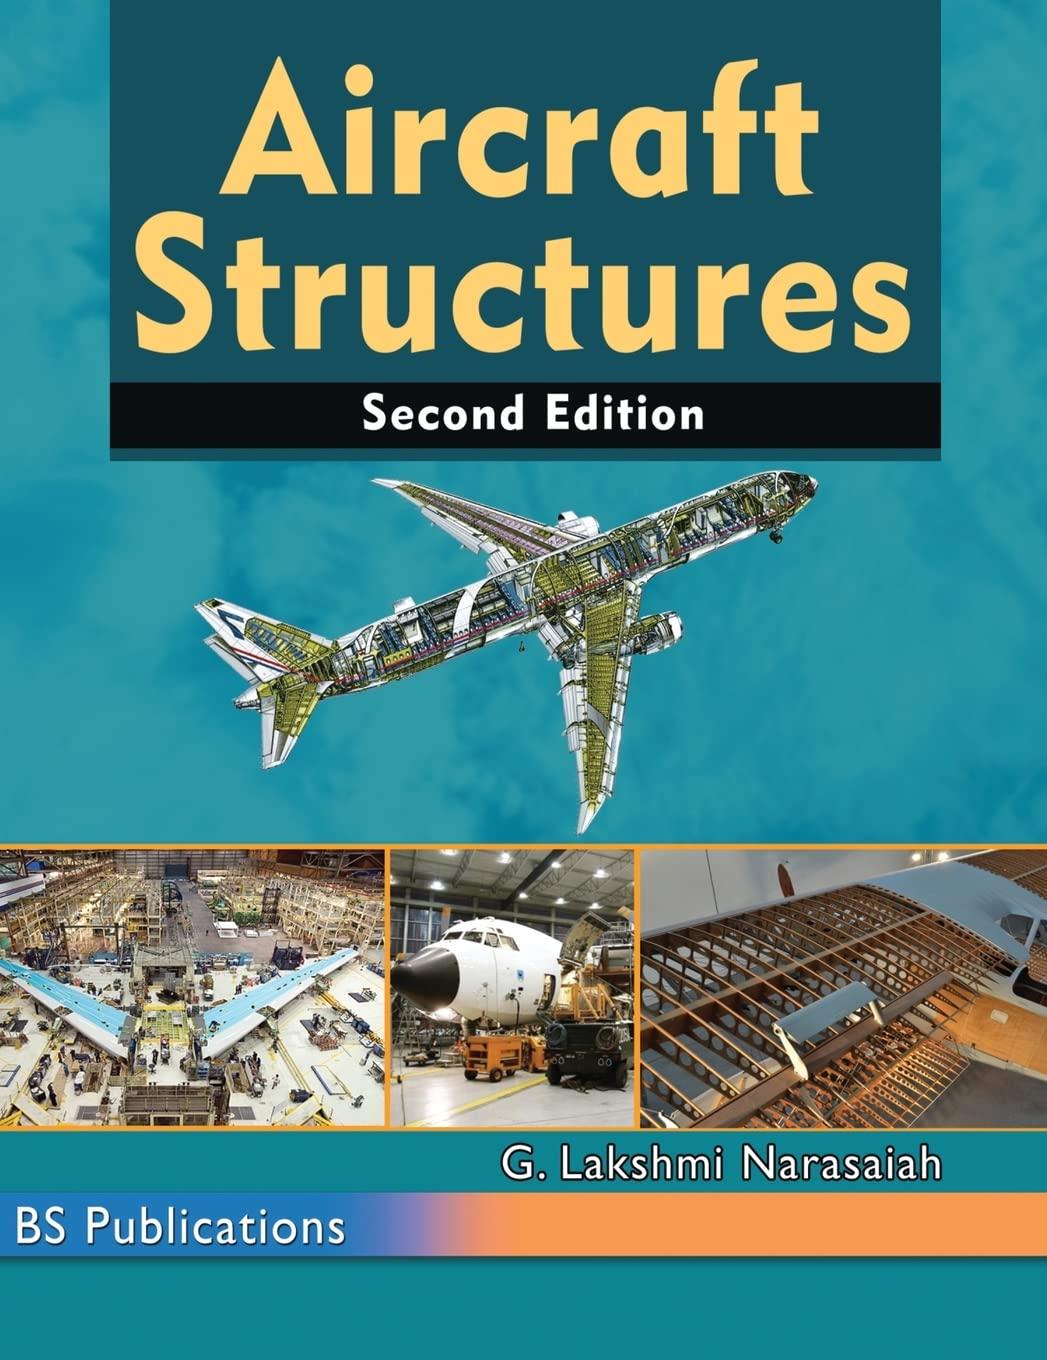 aircraft structures 2nd edition g lakshmi narasaiah 9389974976, 978-9389974973